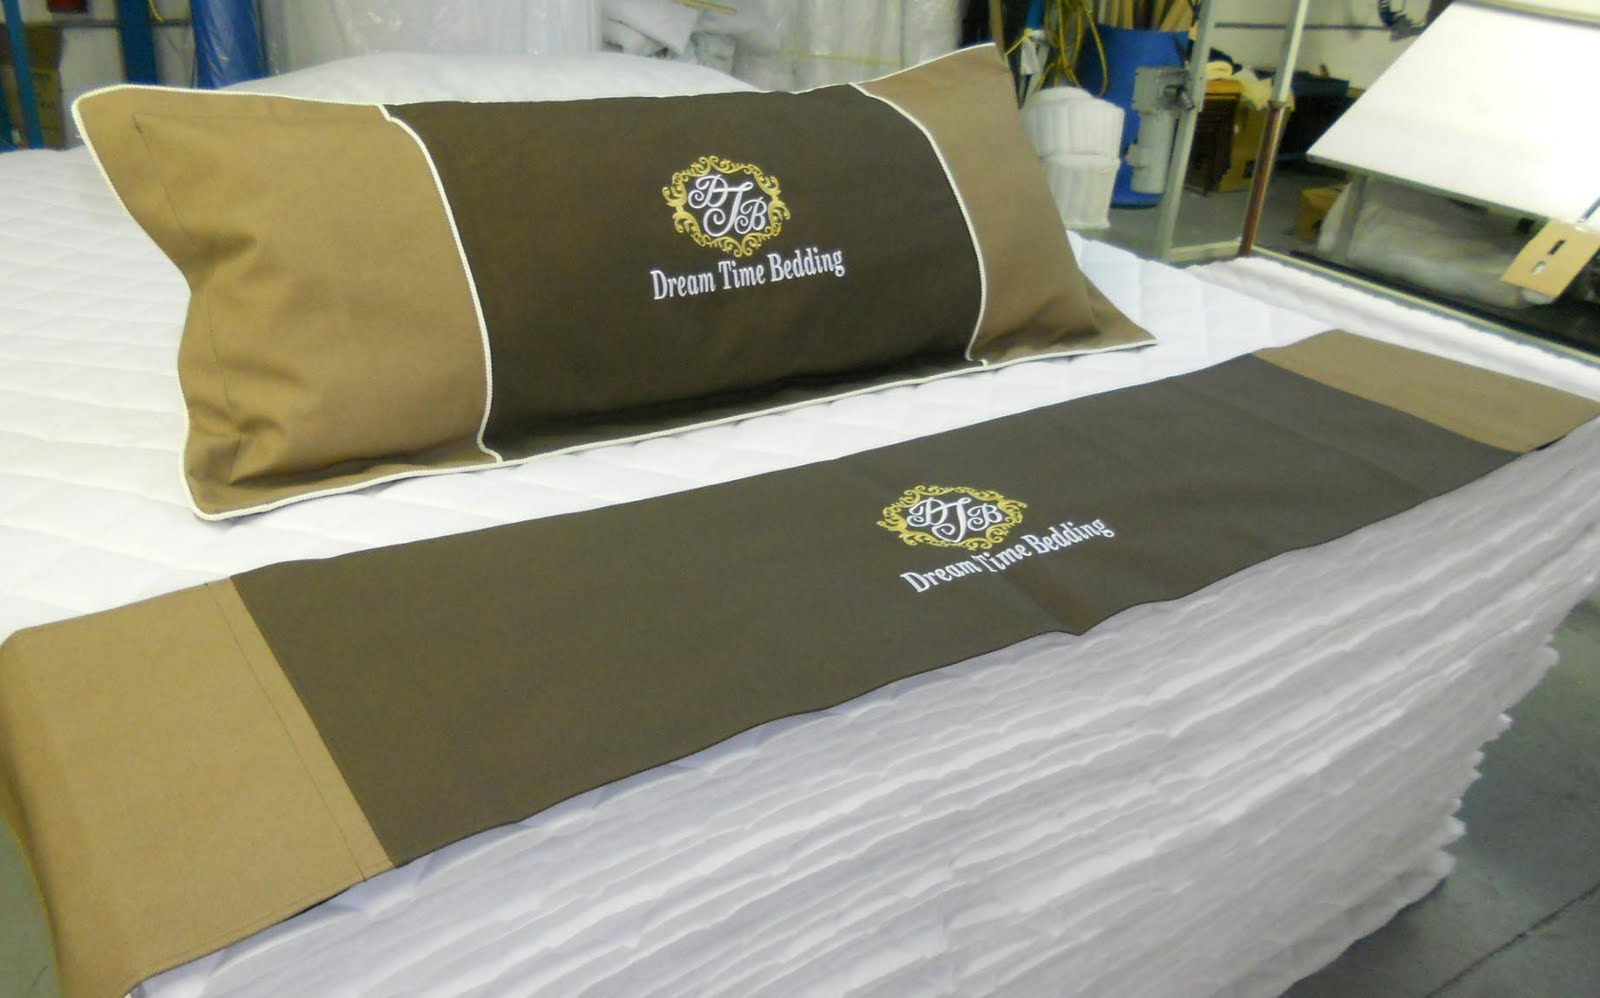 retail mattress foot protectors